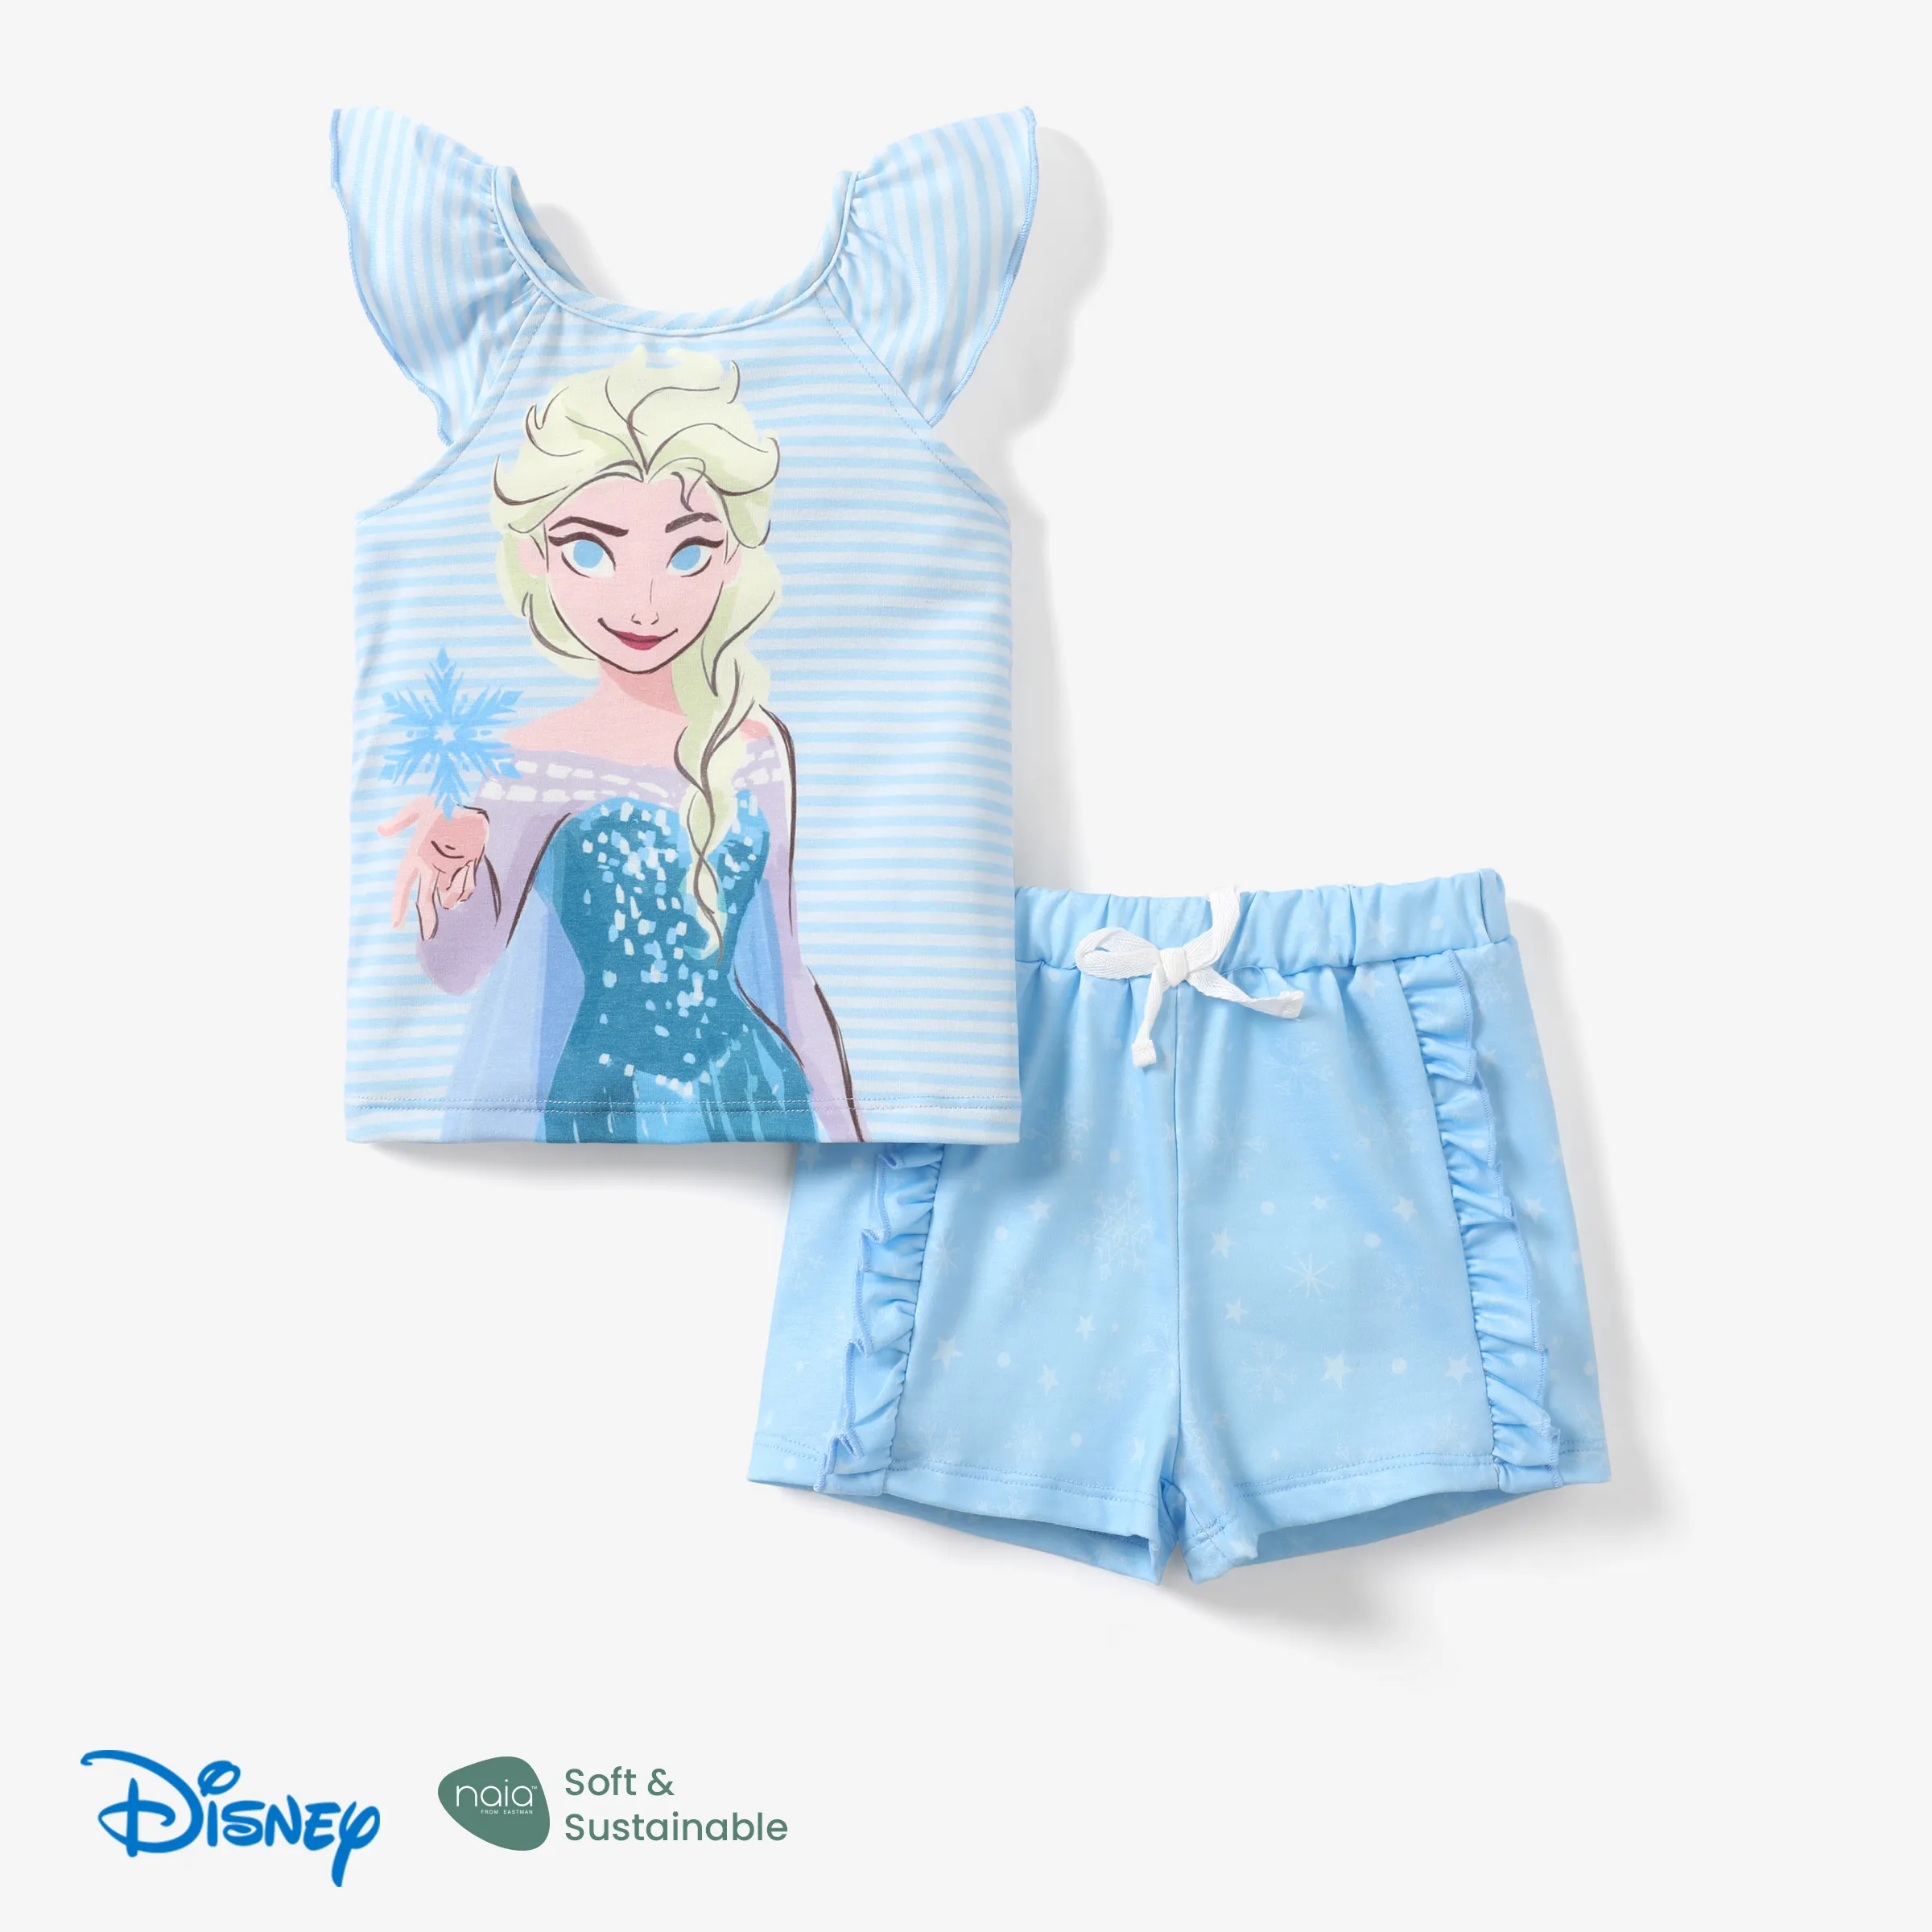 

Disney Frozen Elsa&Anna 2pcs Toddler Girl Naia™ Character Print Ruffled Striped Top with Ruffled Shorts Set